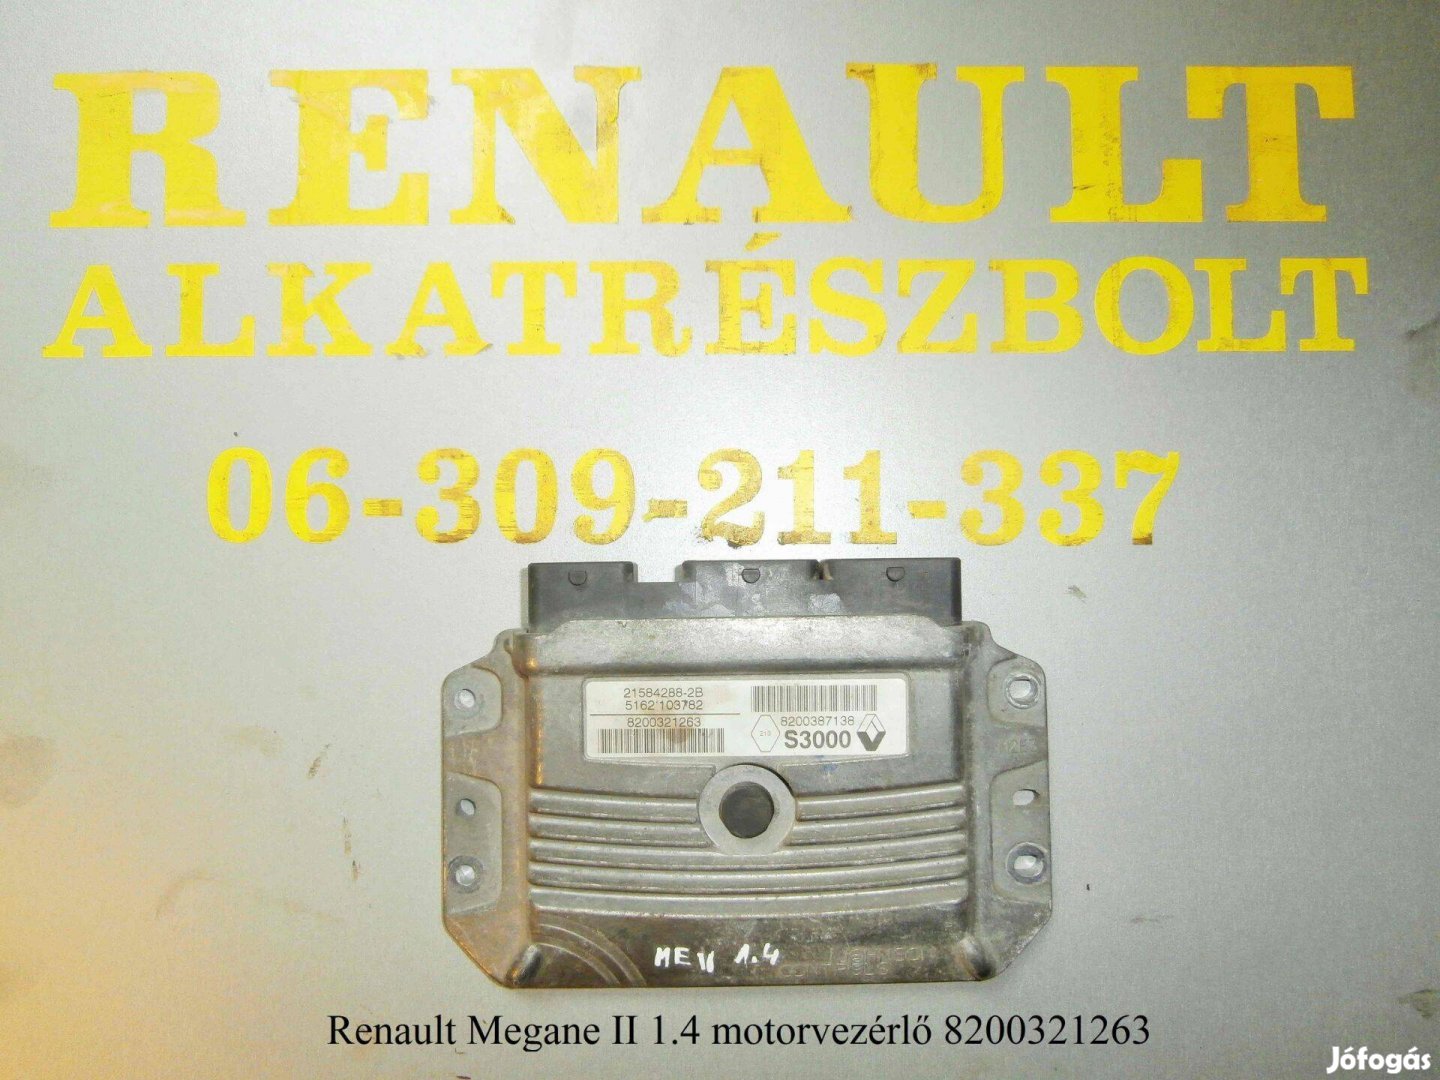 Renault Megane II 1.4 motorvezérlő 8200321263